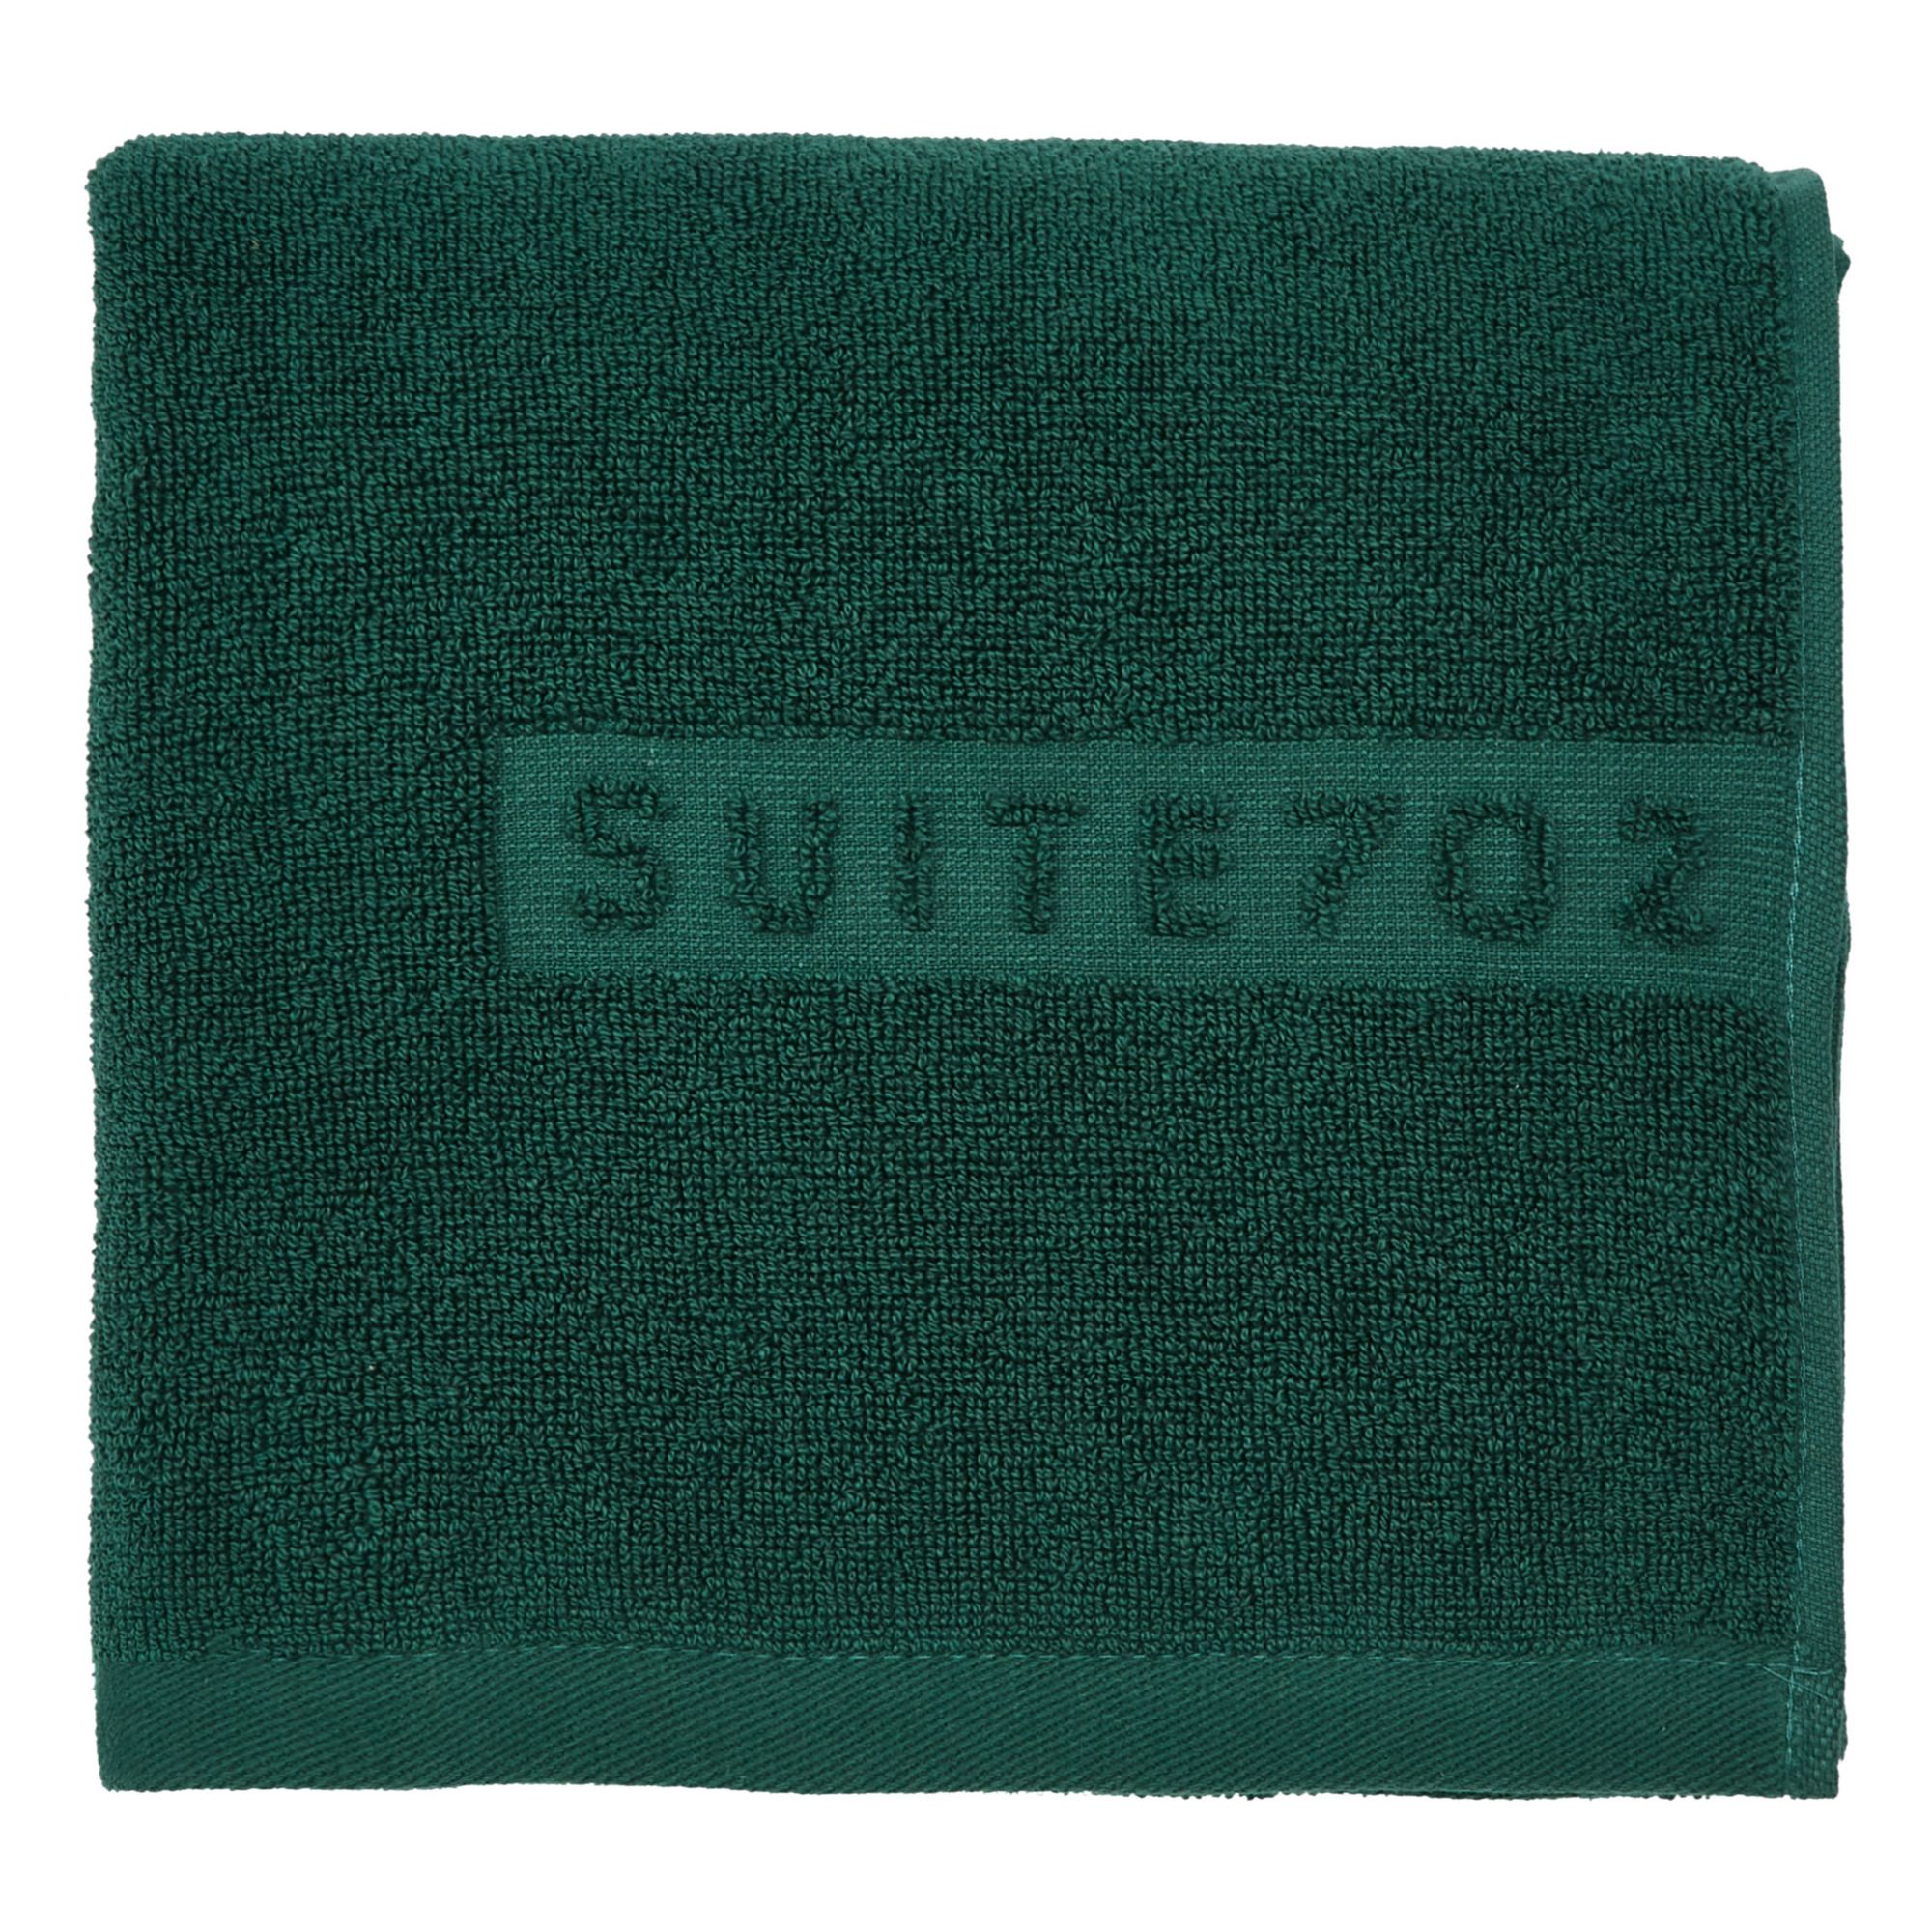 Suite 702 - Serviette de toilette en coton bio - Vert émeraude